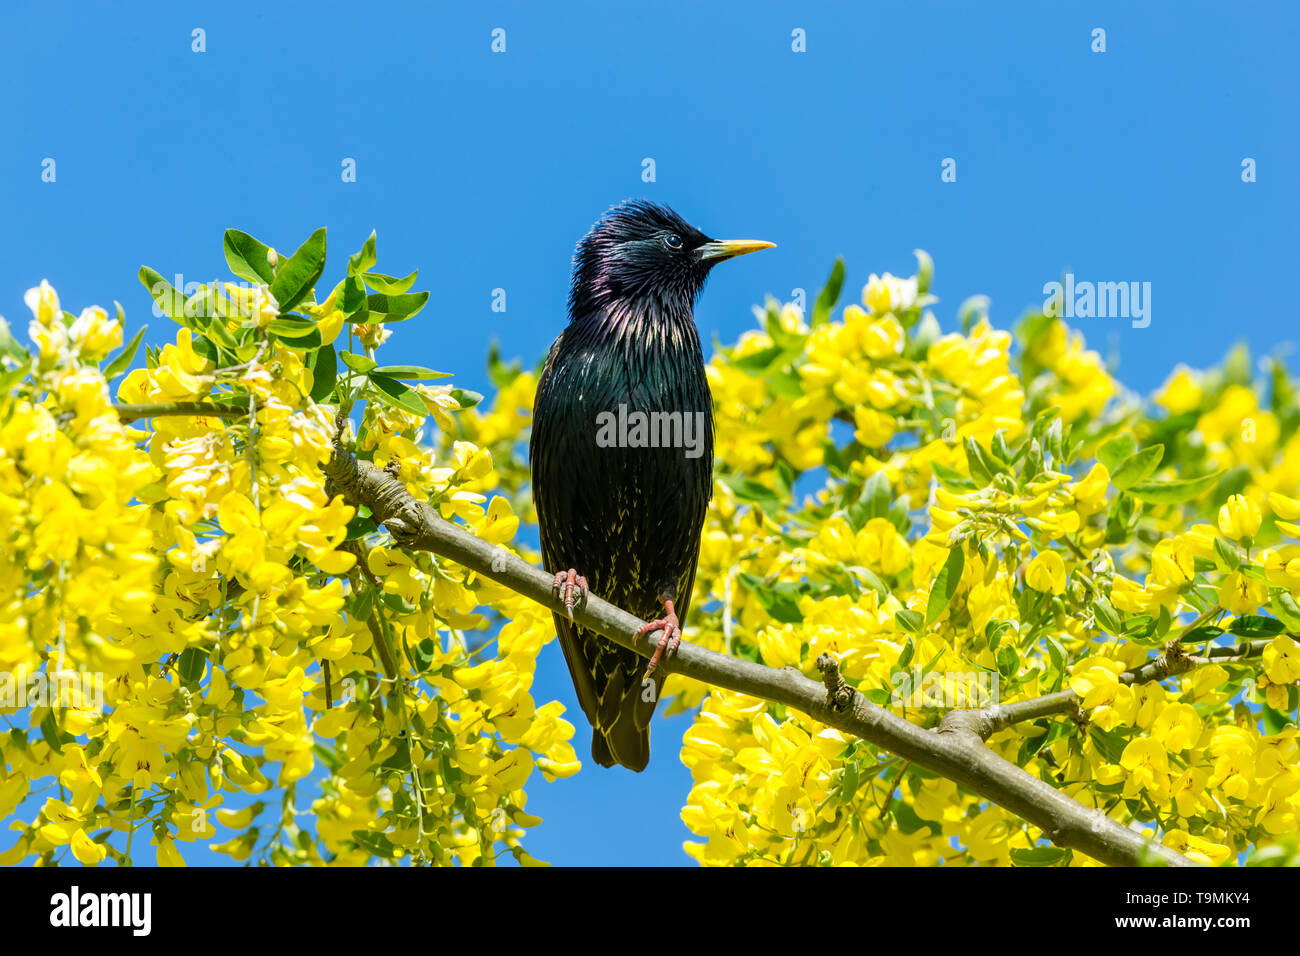 Starling, nom scientifique : Sturnus vulgaris. perché dans l'arbre Laburnum avec fleurs jaune vif. Nettoyer le fond de ciel bleu. Face à la droite. L'horizontale Banque D'Images